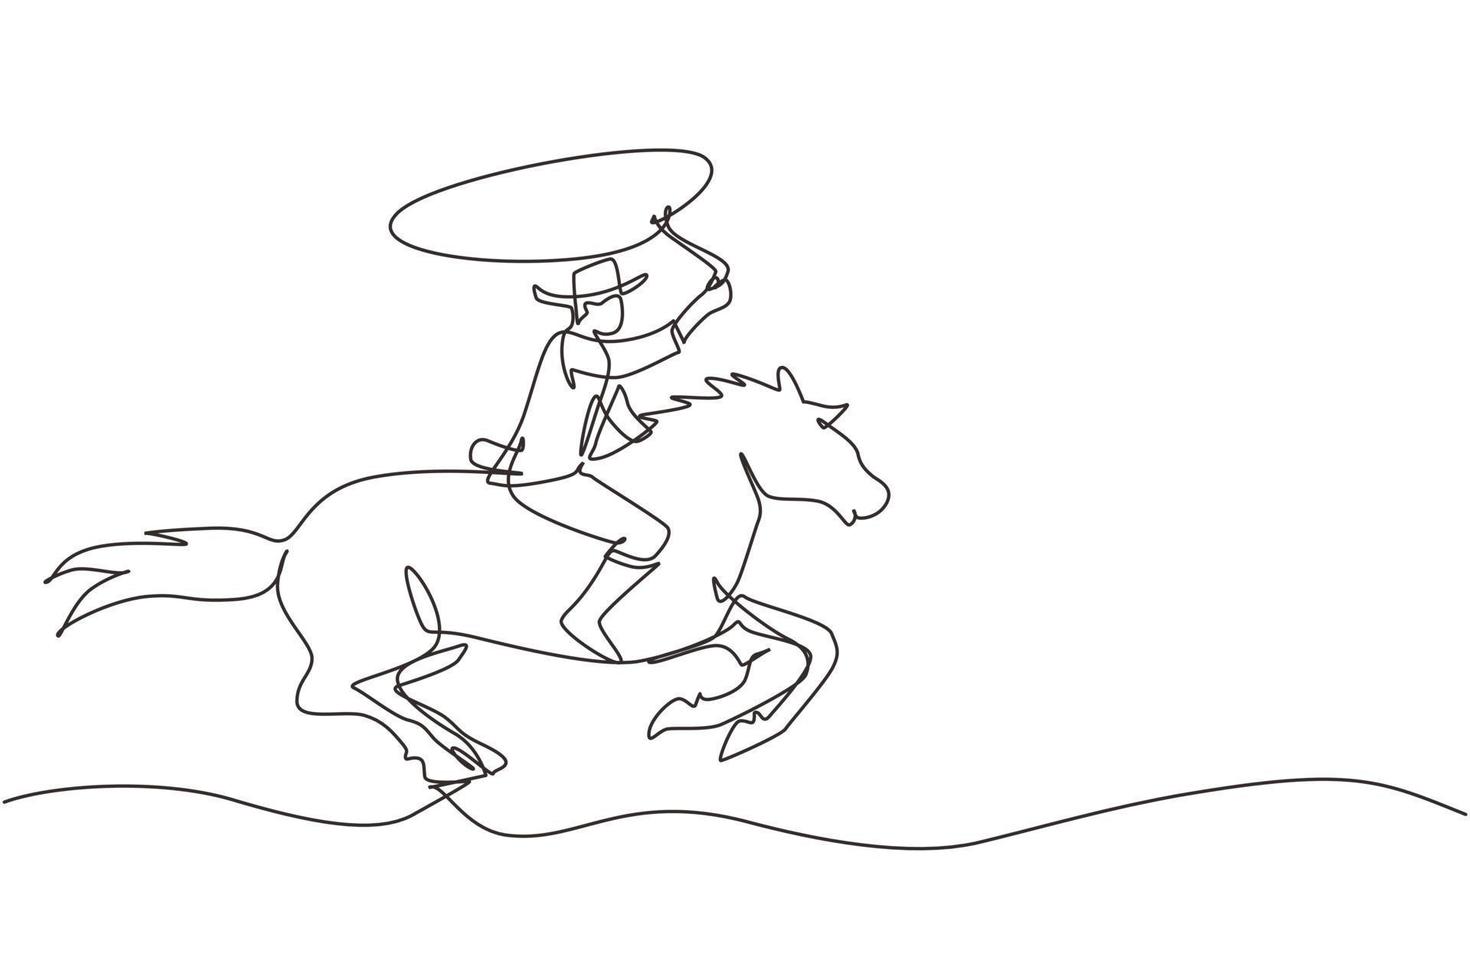 durchgehende einzeilige zeichnung cowboy auf pferd, das durch die wüste galoppiert. Cowboy auf sträubendem Pferd, das mit Lasso läuft. Cowboy mit Seillasso auf Pferd. einzeiliges zeichnen design vektorgrafik illustration vektor